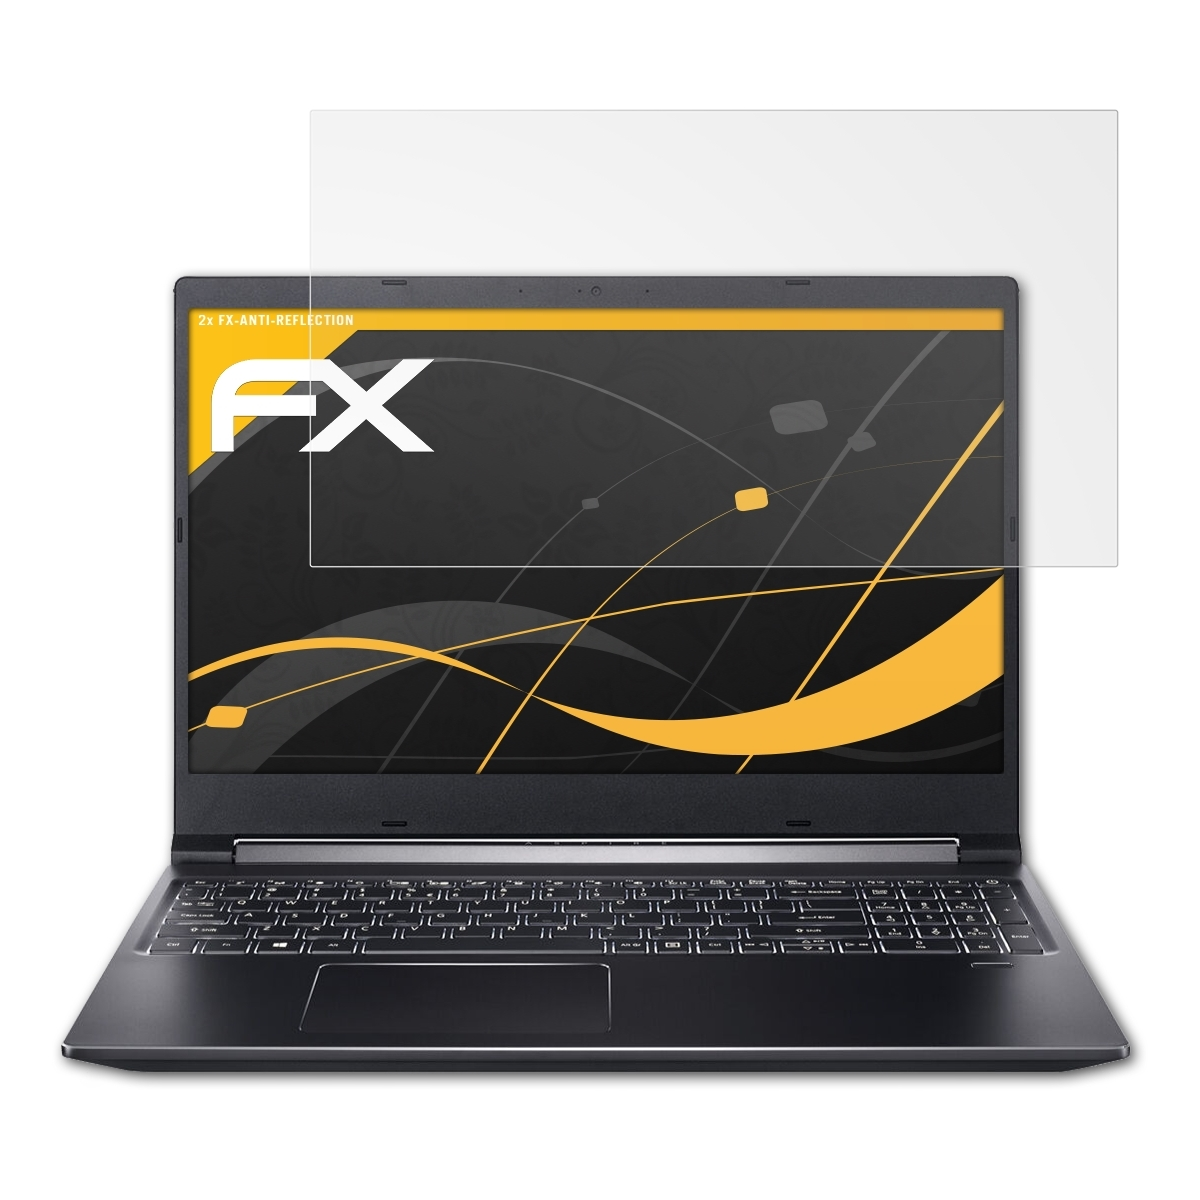 ATFOLIX 2x FX-Antireflex Aspire 7 Displayschutz(für A715-74G) Acer